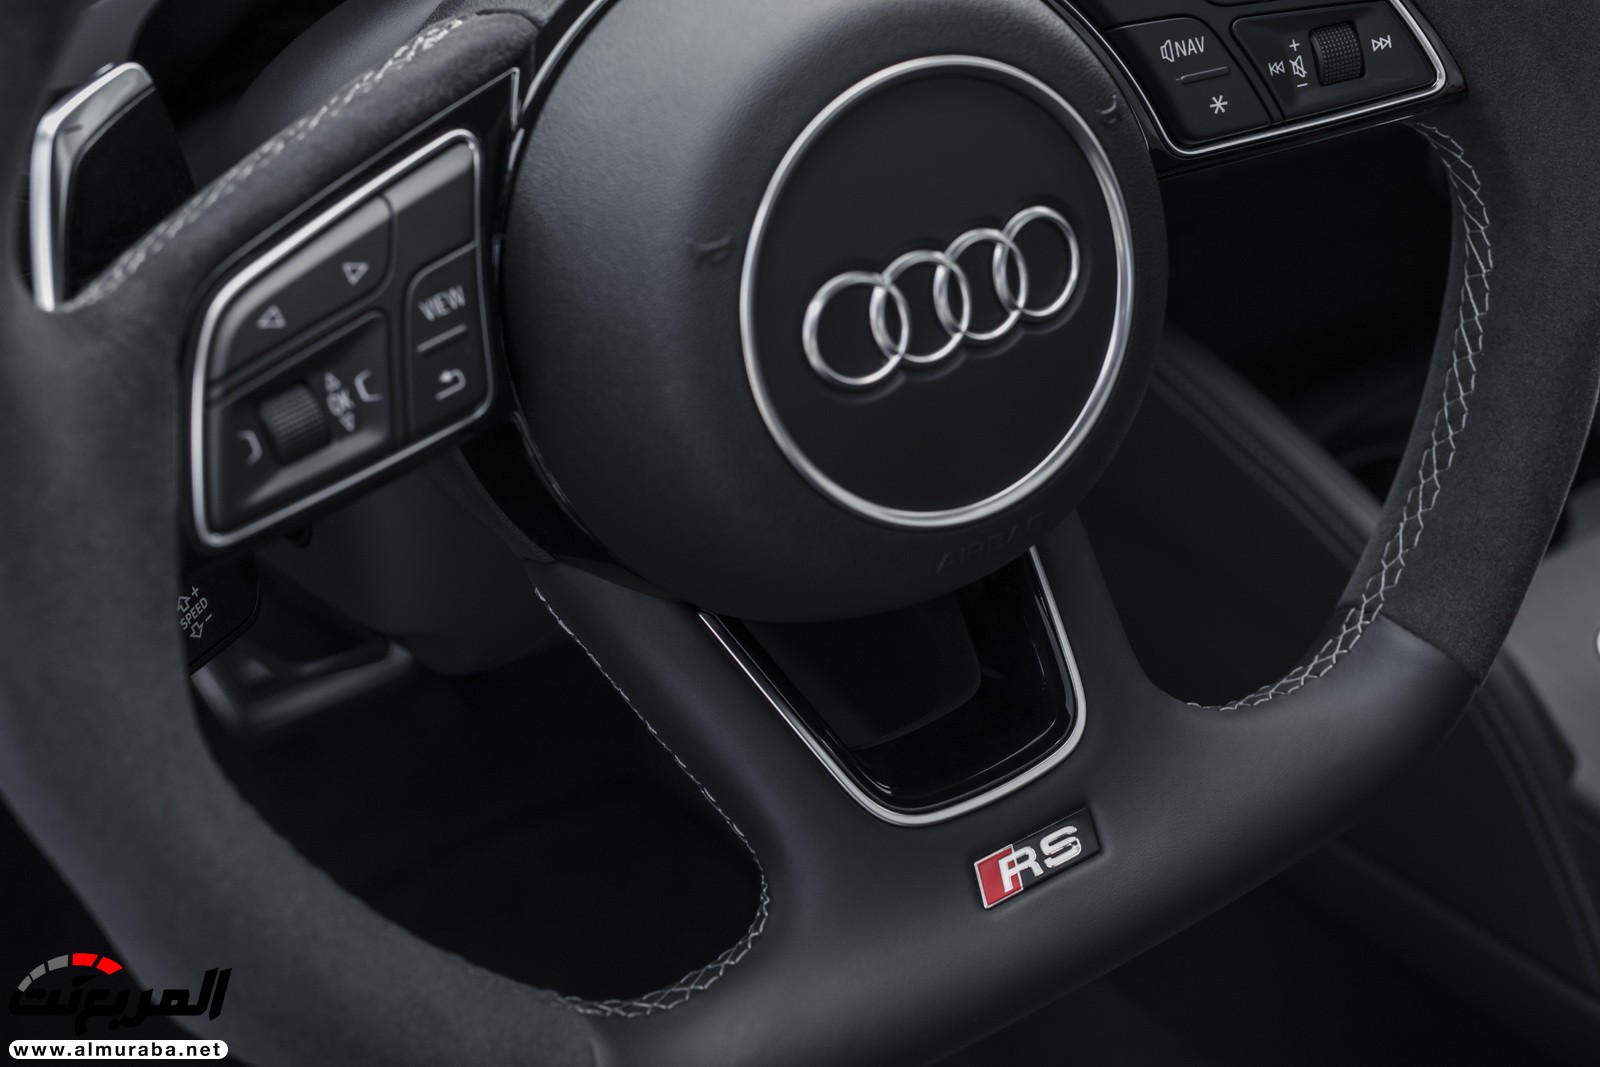 "أودي" تكشف عن RS3 الجديدة كليا 2018 بقوة 395 حصان Audi 68